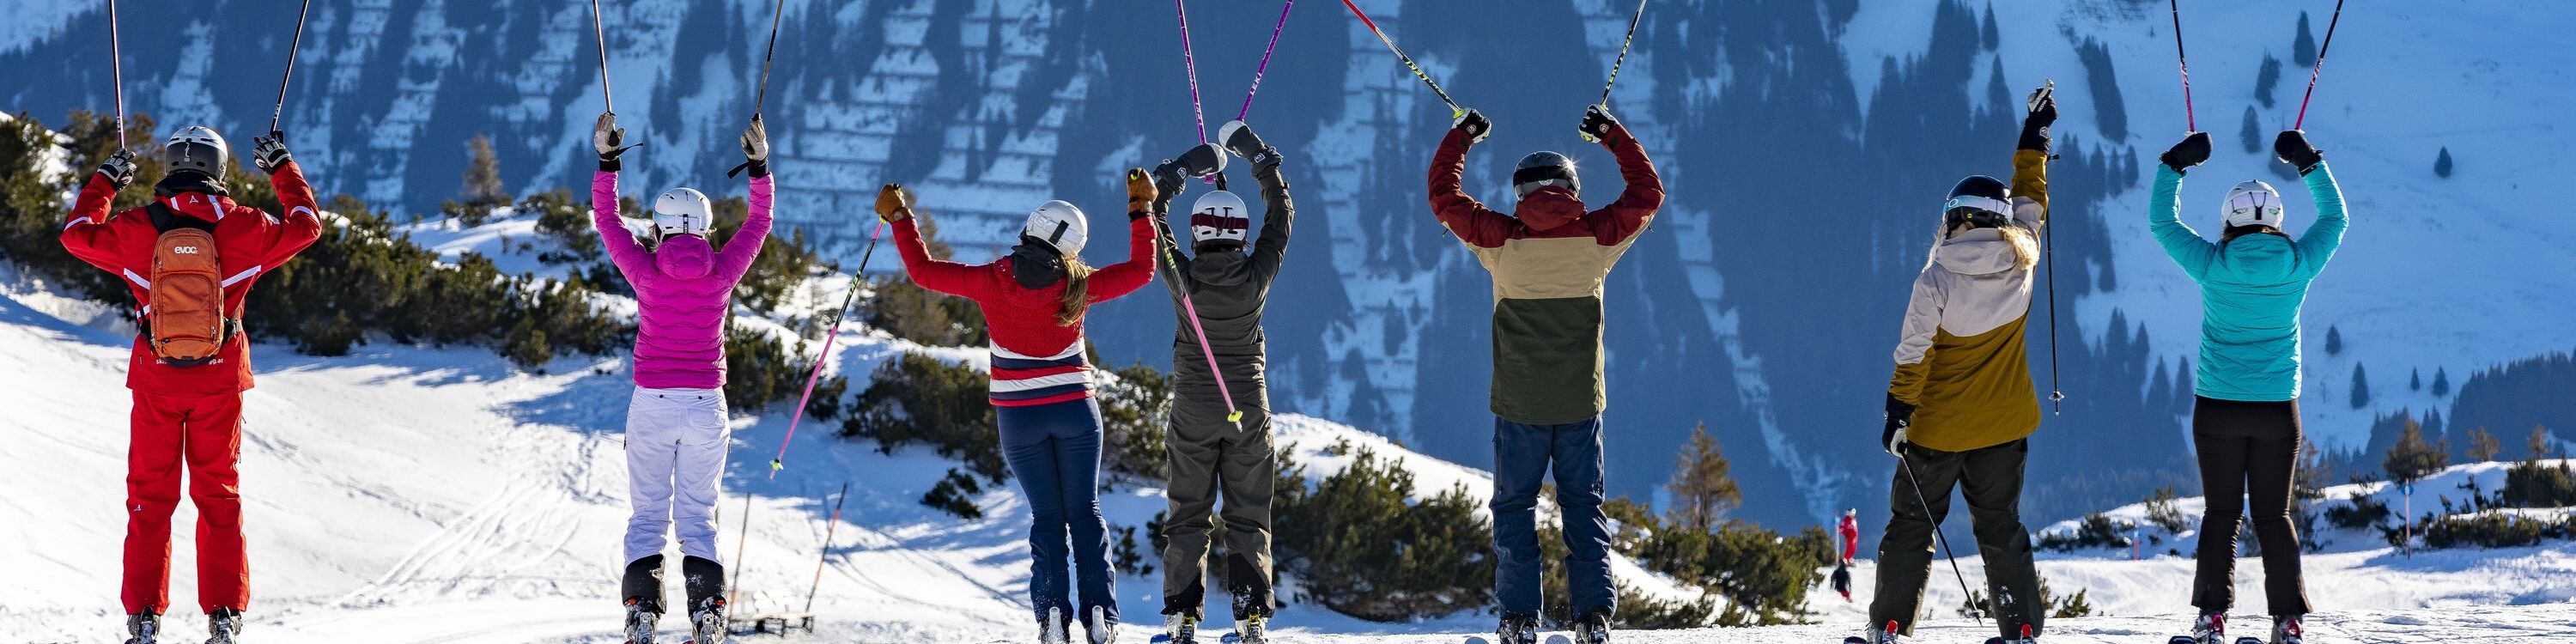 Gruppenskikurs Kleinwalsertal Oberstdorf - Teilnehmer strecken Skistöcke in die Luft